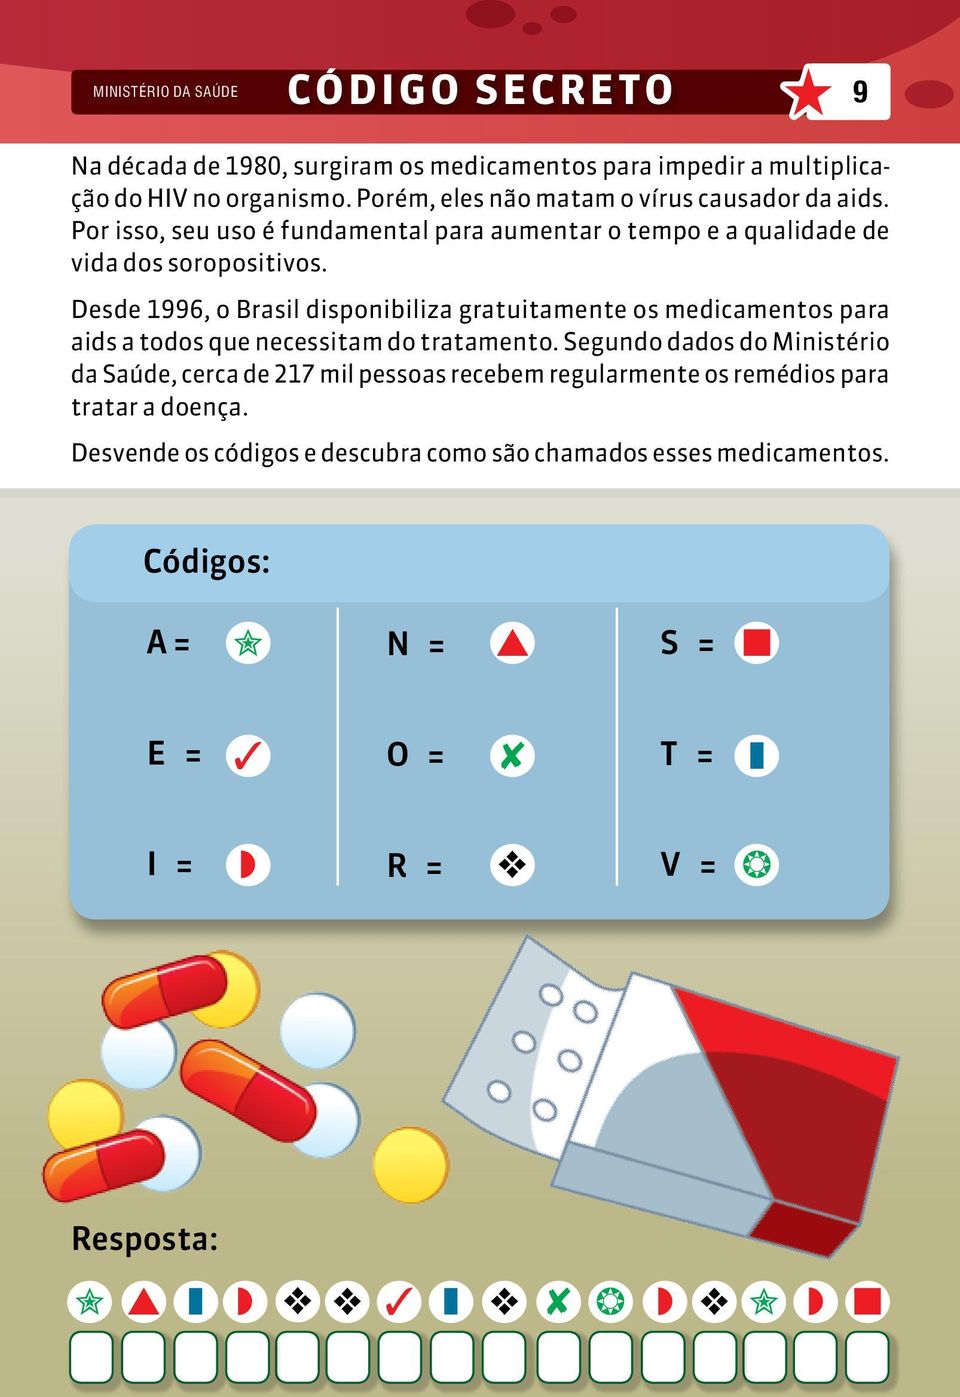 Desde 1996, o Brasil disponibiliza gratuitamente os medicamentos para aids a todos que necessitam do tratamento.